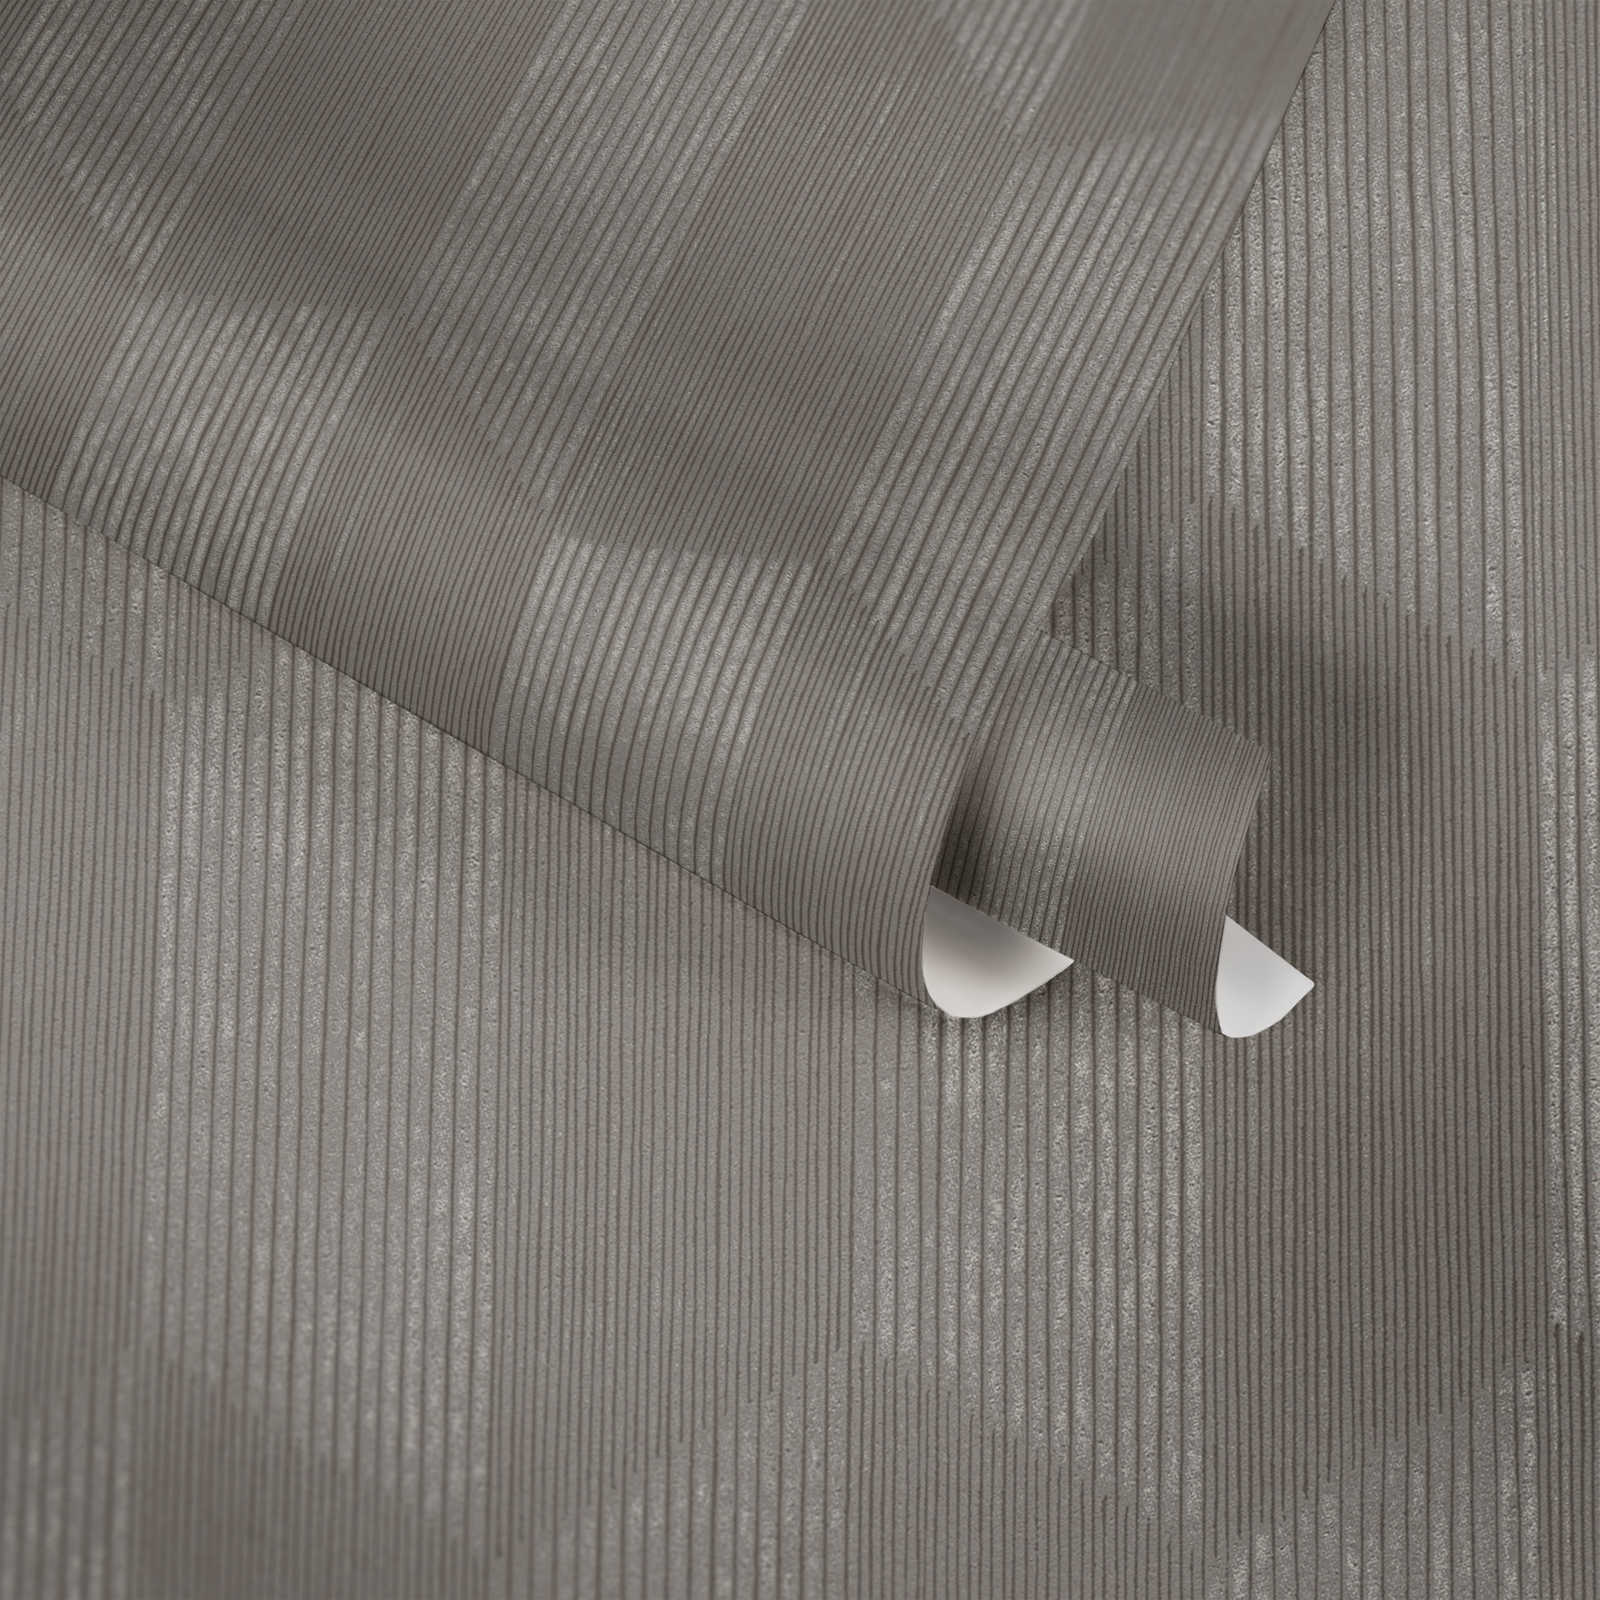             Textuurbehang met 3D grafisch patroon - grijs, beige
        